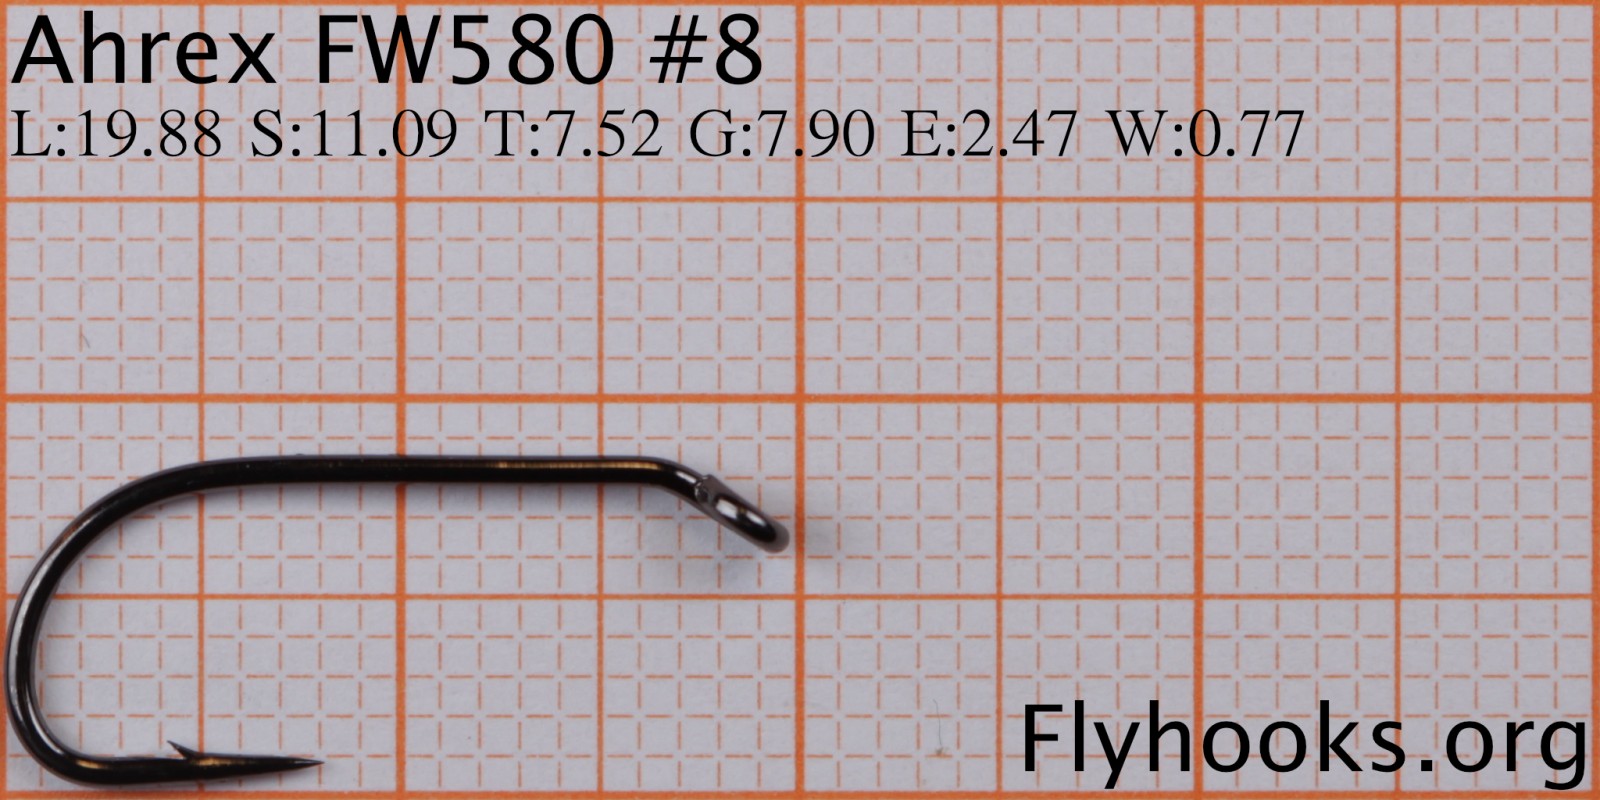 FW 580 - Wet Fly